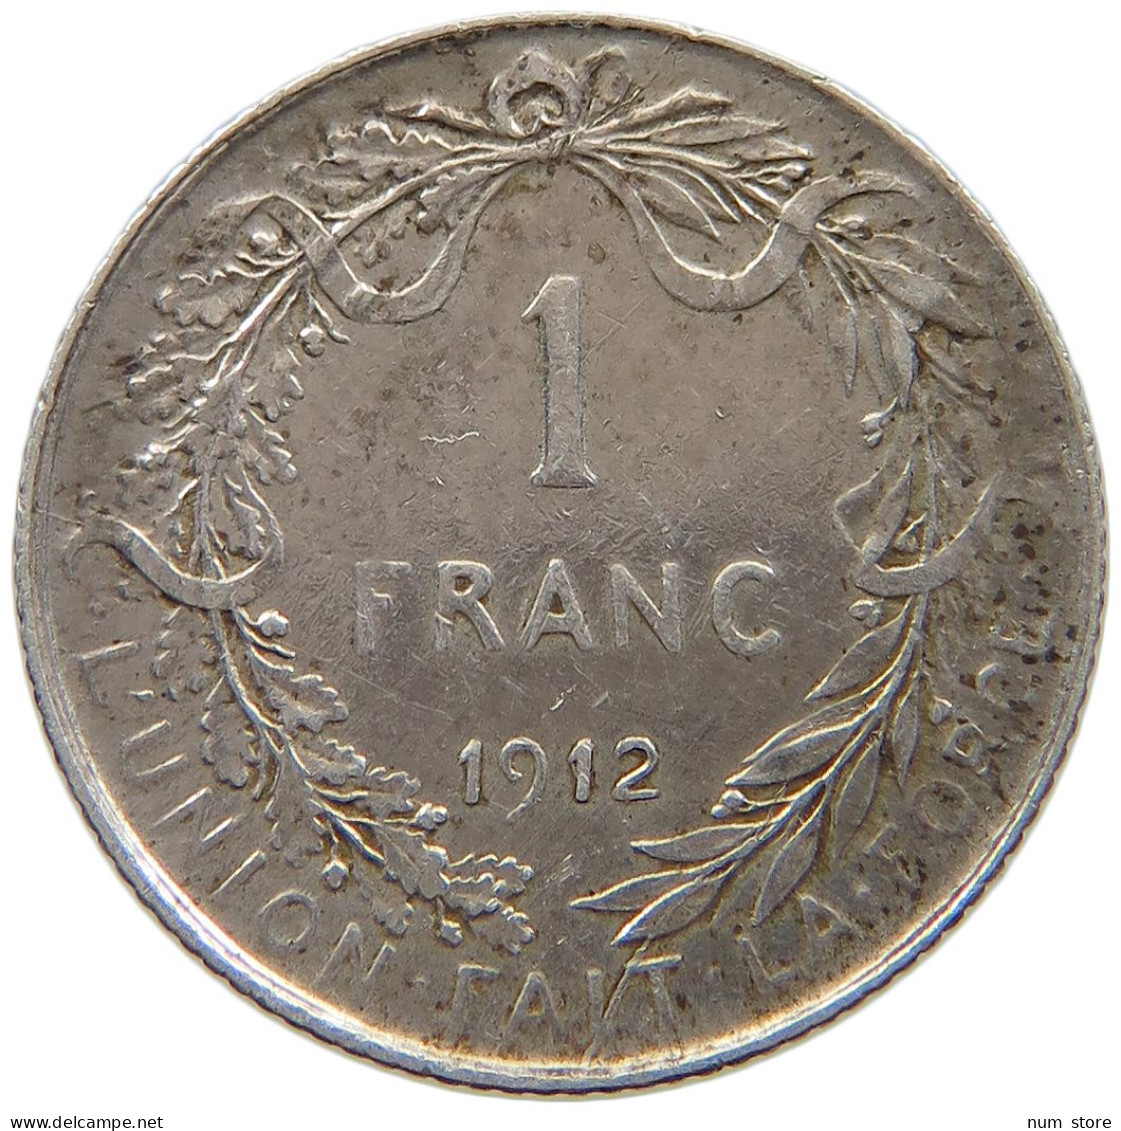 BELGIUM FRANC 1912 Albert I. 1909-1934 #s035 0211 - 1 Franc